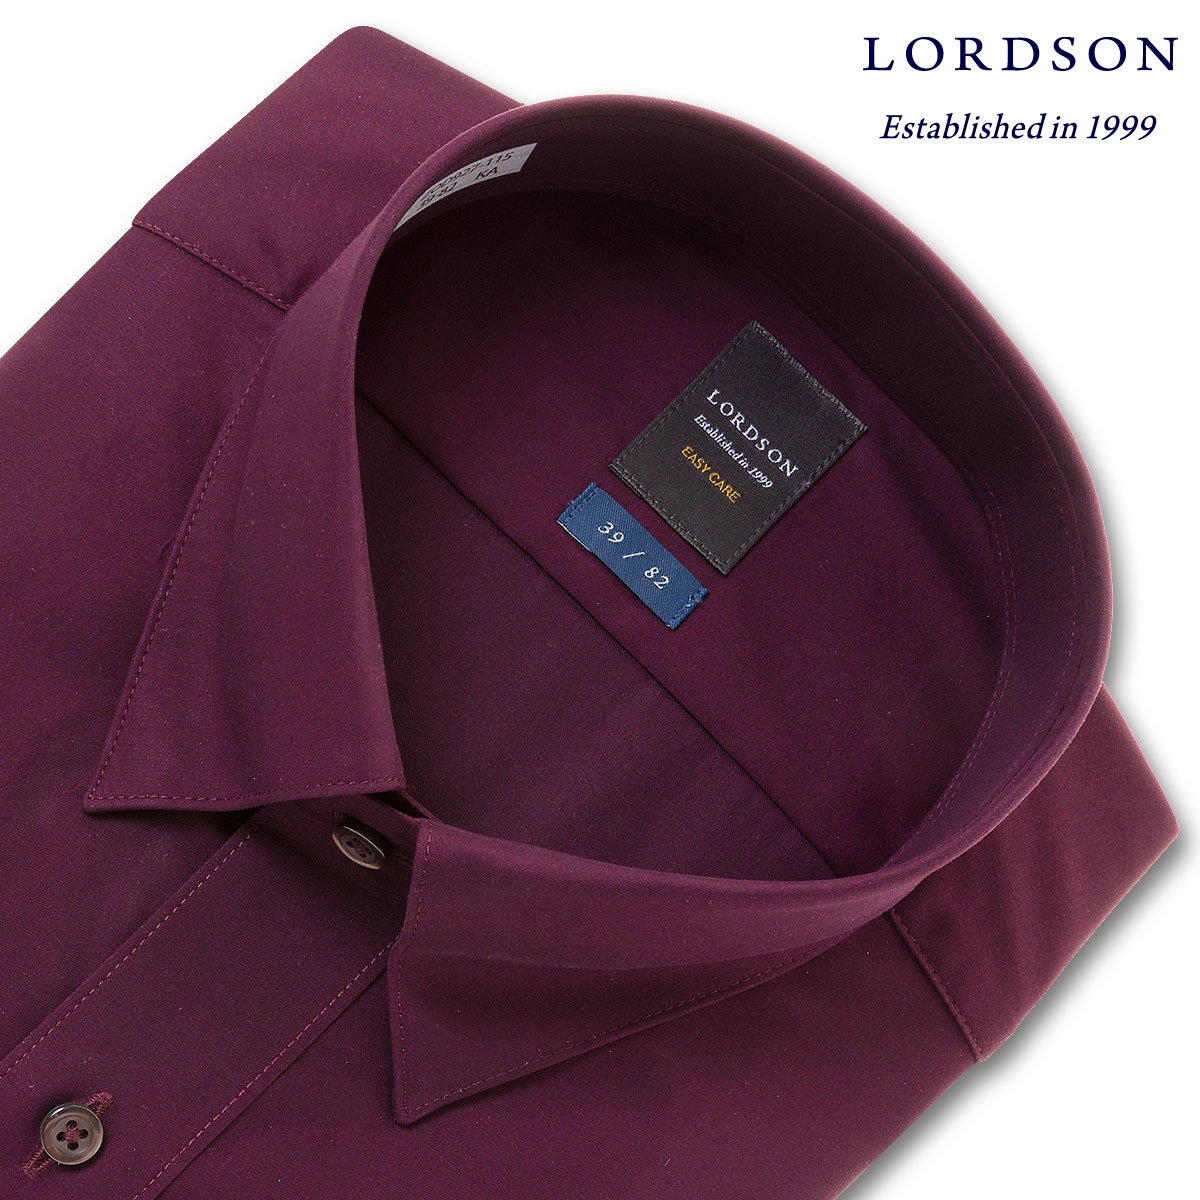 LORDSON 長袖 ワイシャツ メンズ 形態安定 ショートスナップダウン バーガンディー 無地 ブロード 綿100% (zod927-115)のサムネイル